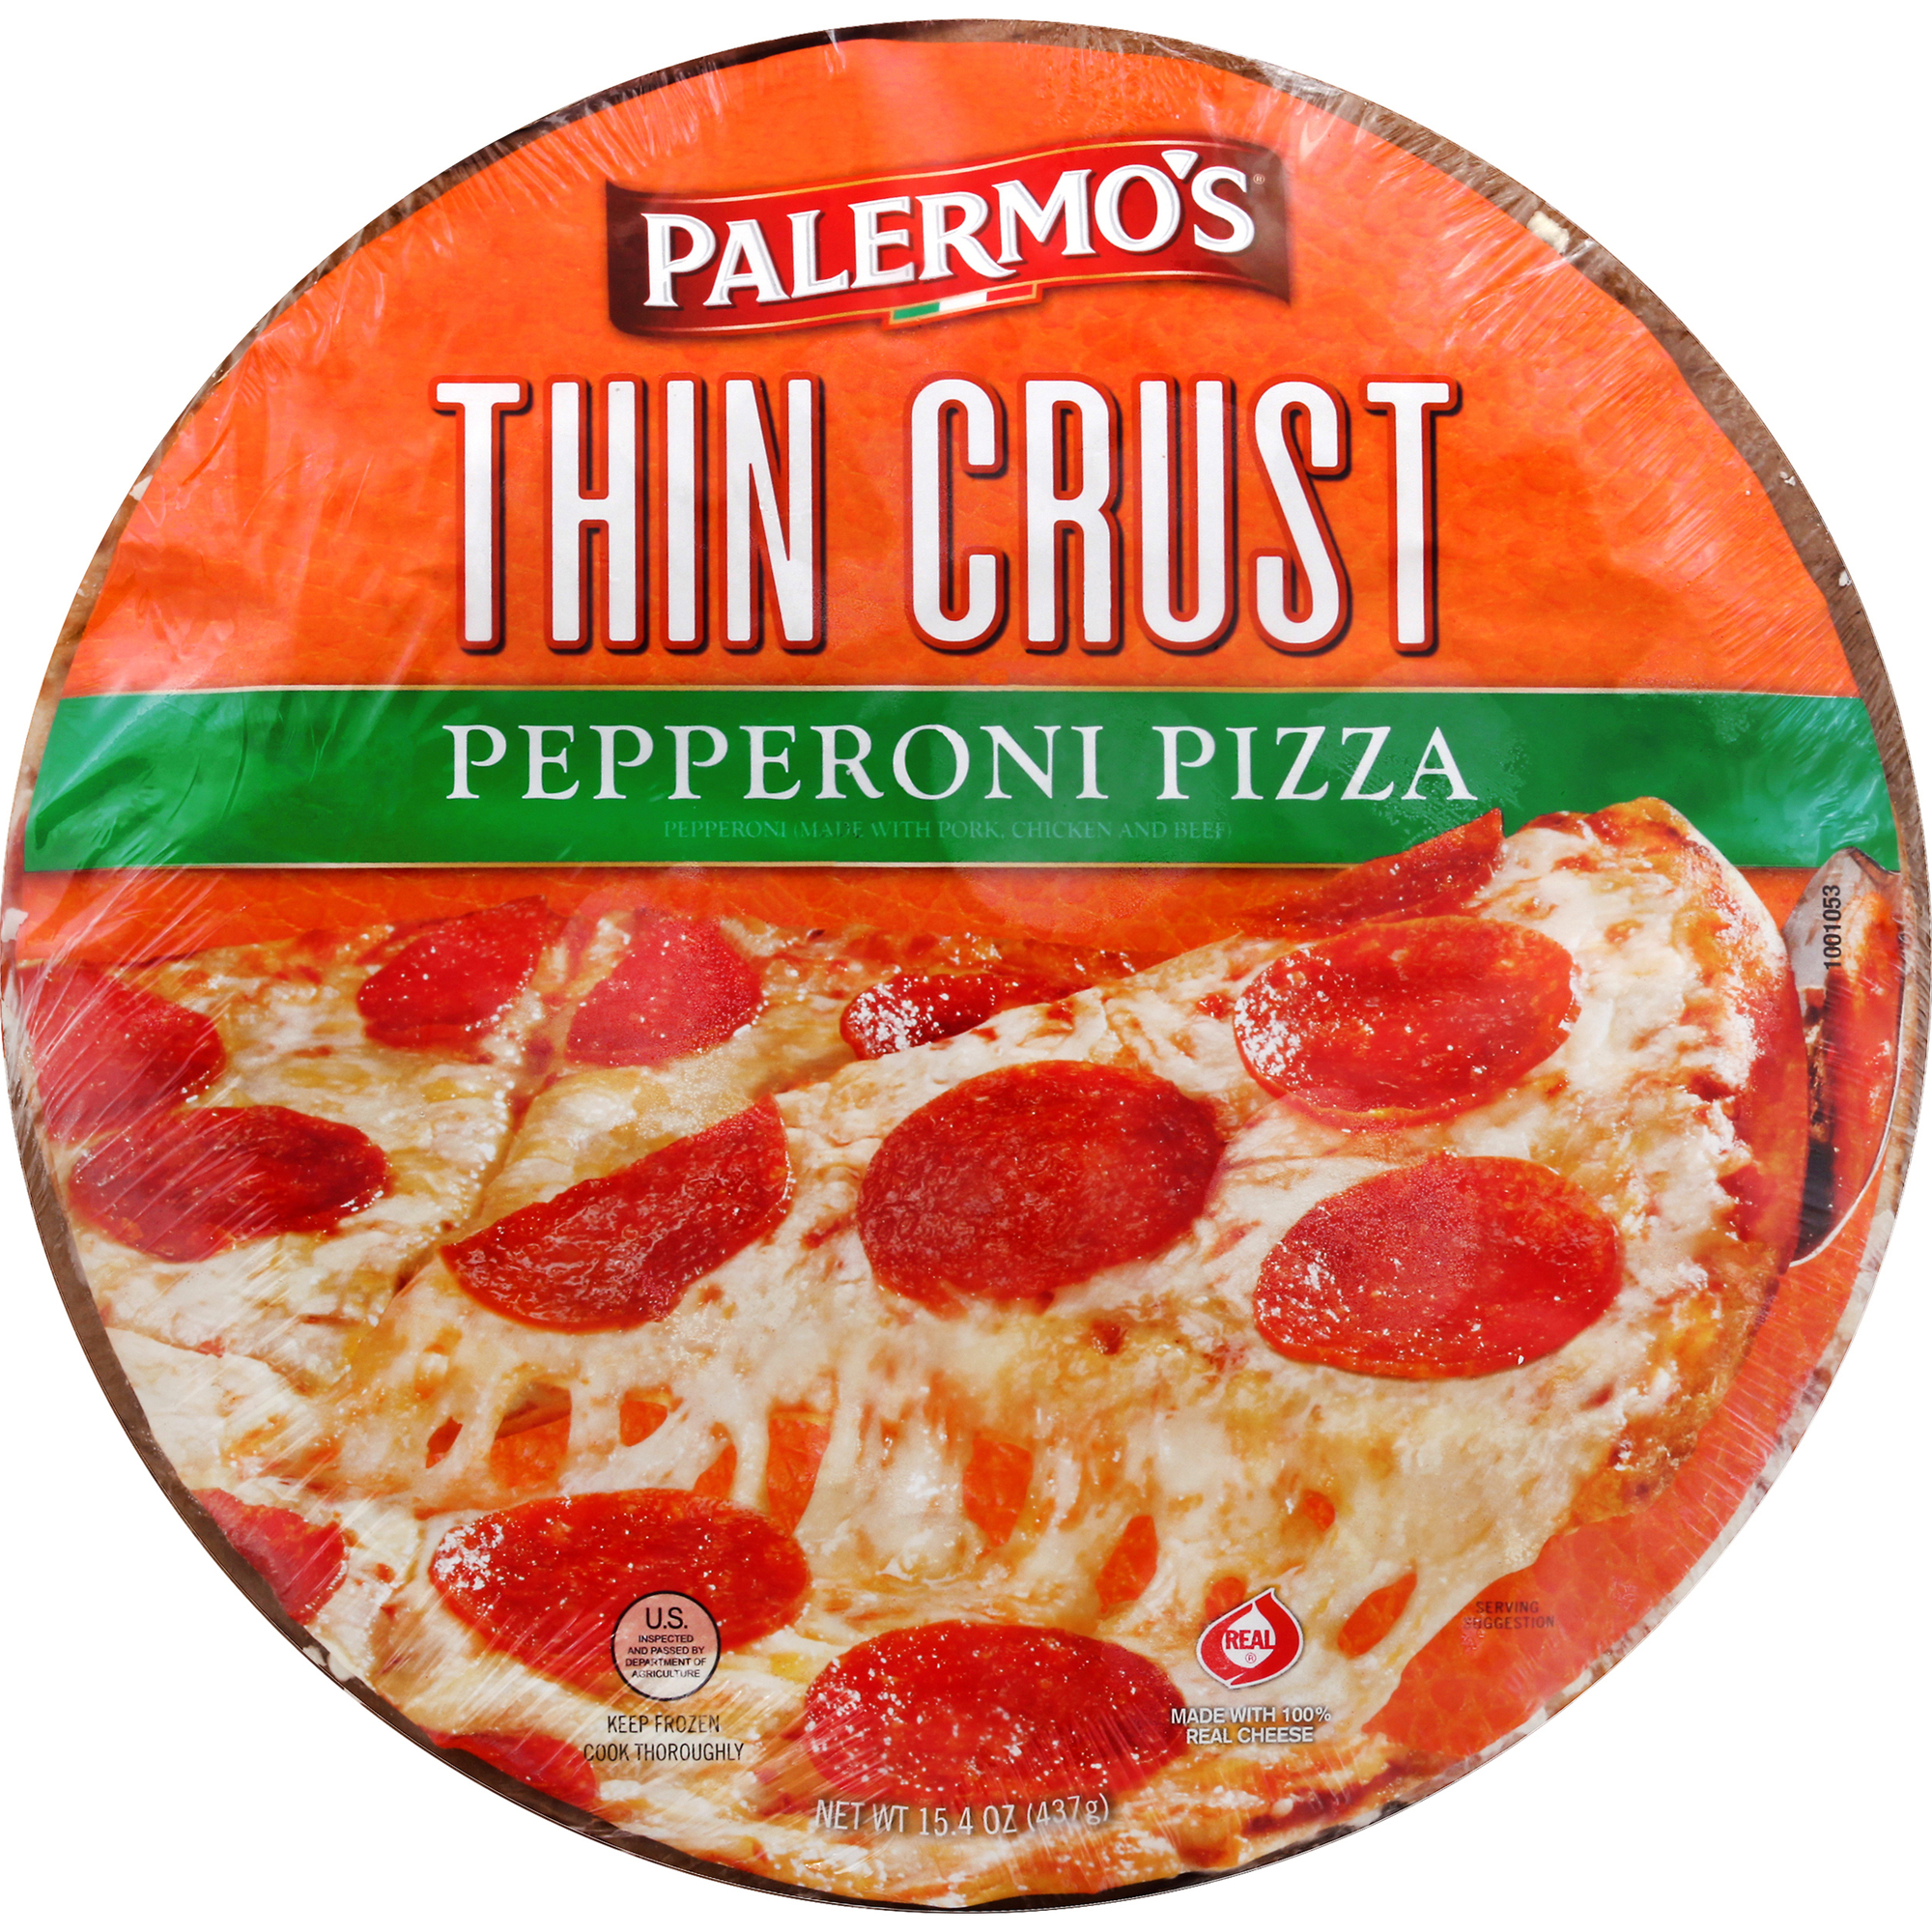 Palermo's Thin Crust Pepperoni Pizza 12 units per case 15.8 oz